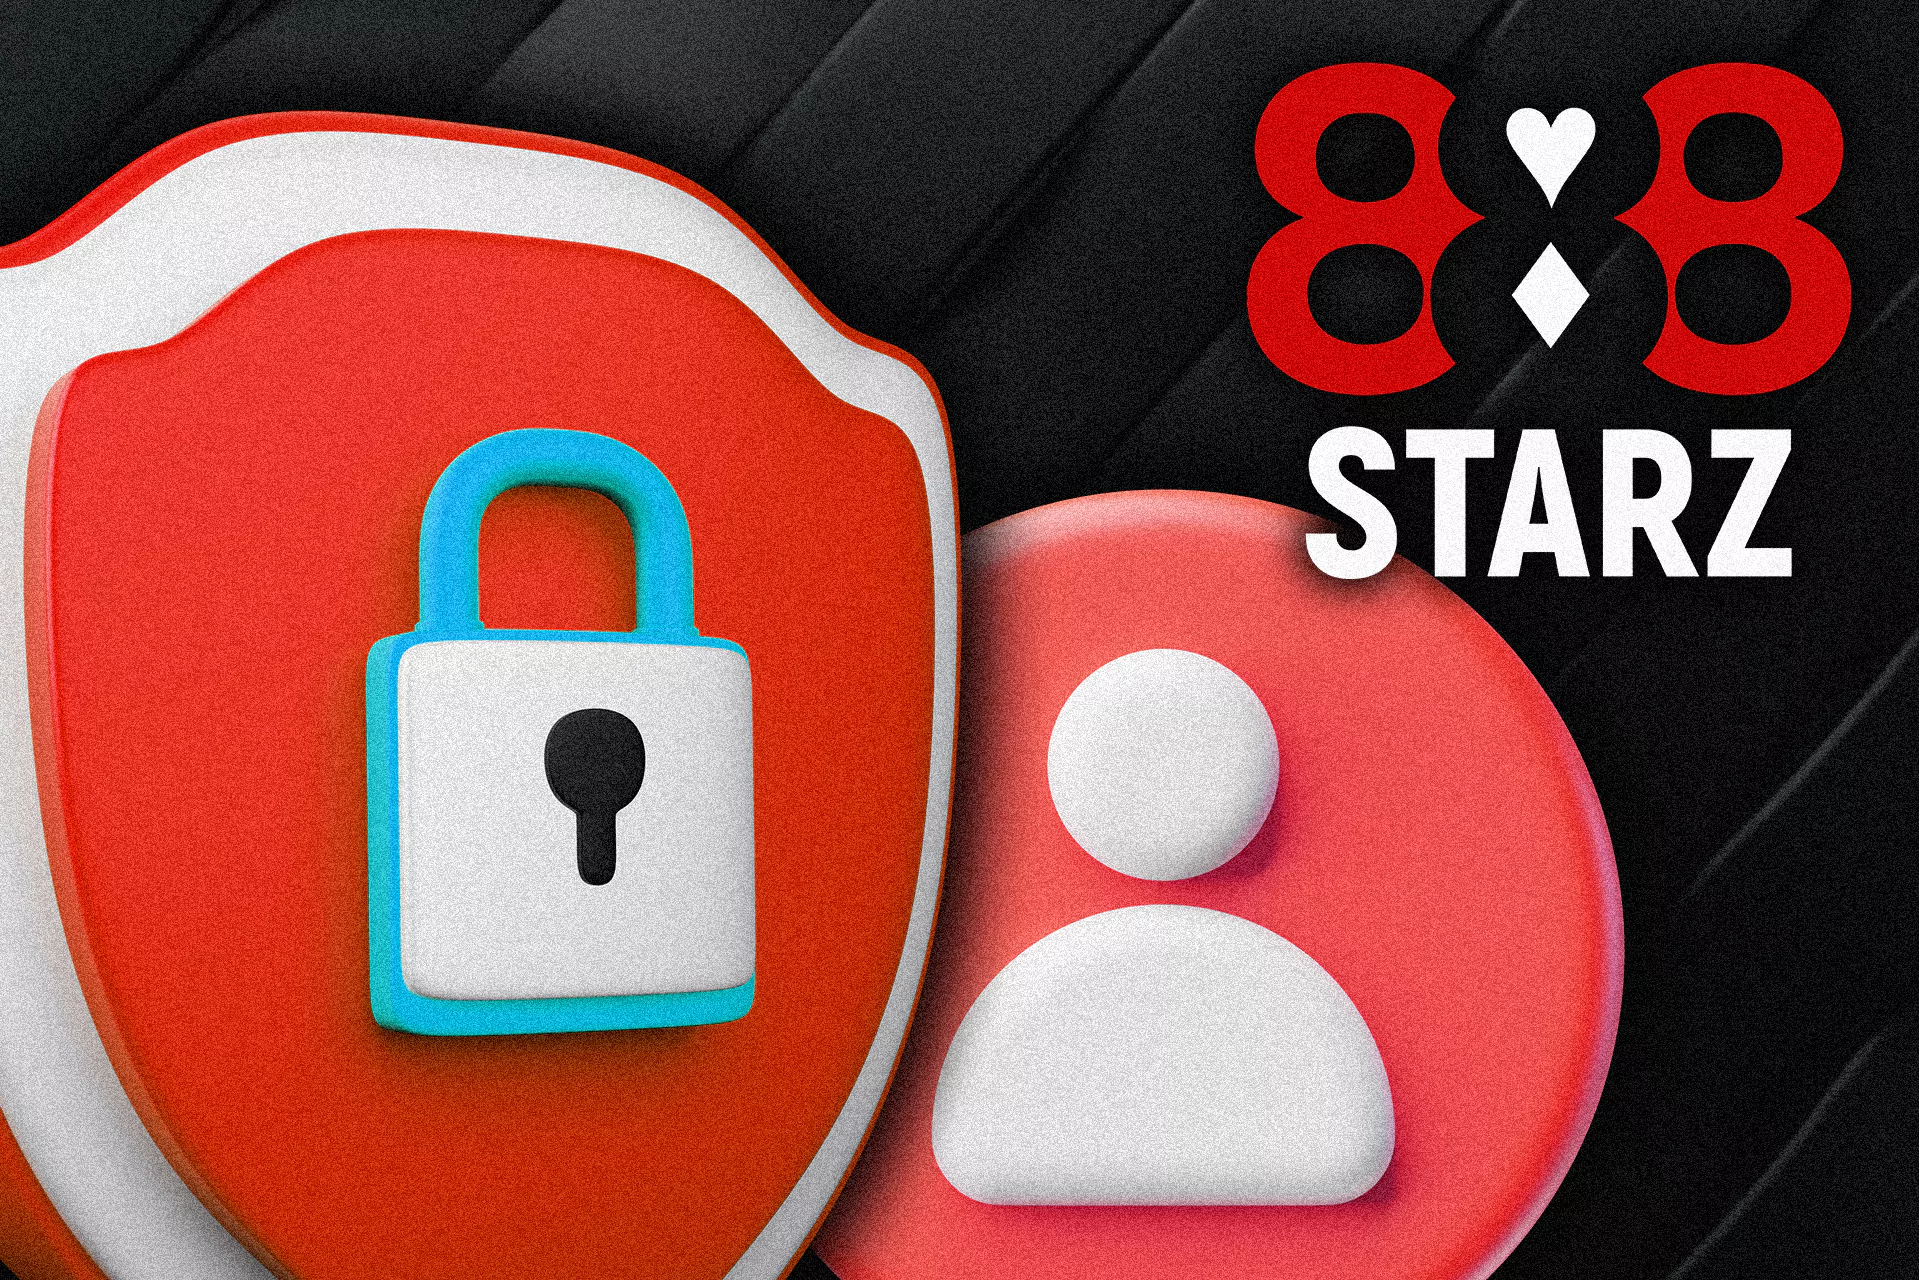 जब आप 888starz पर दांव लगा रहे हों या खेल रहे हों तो आपको अपनी सुरक्षा की चिंता नहीं करनी चाहिए।